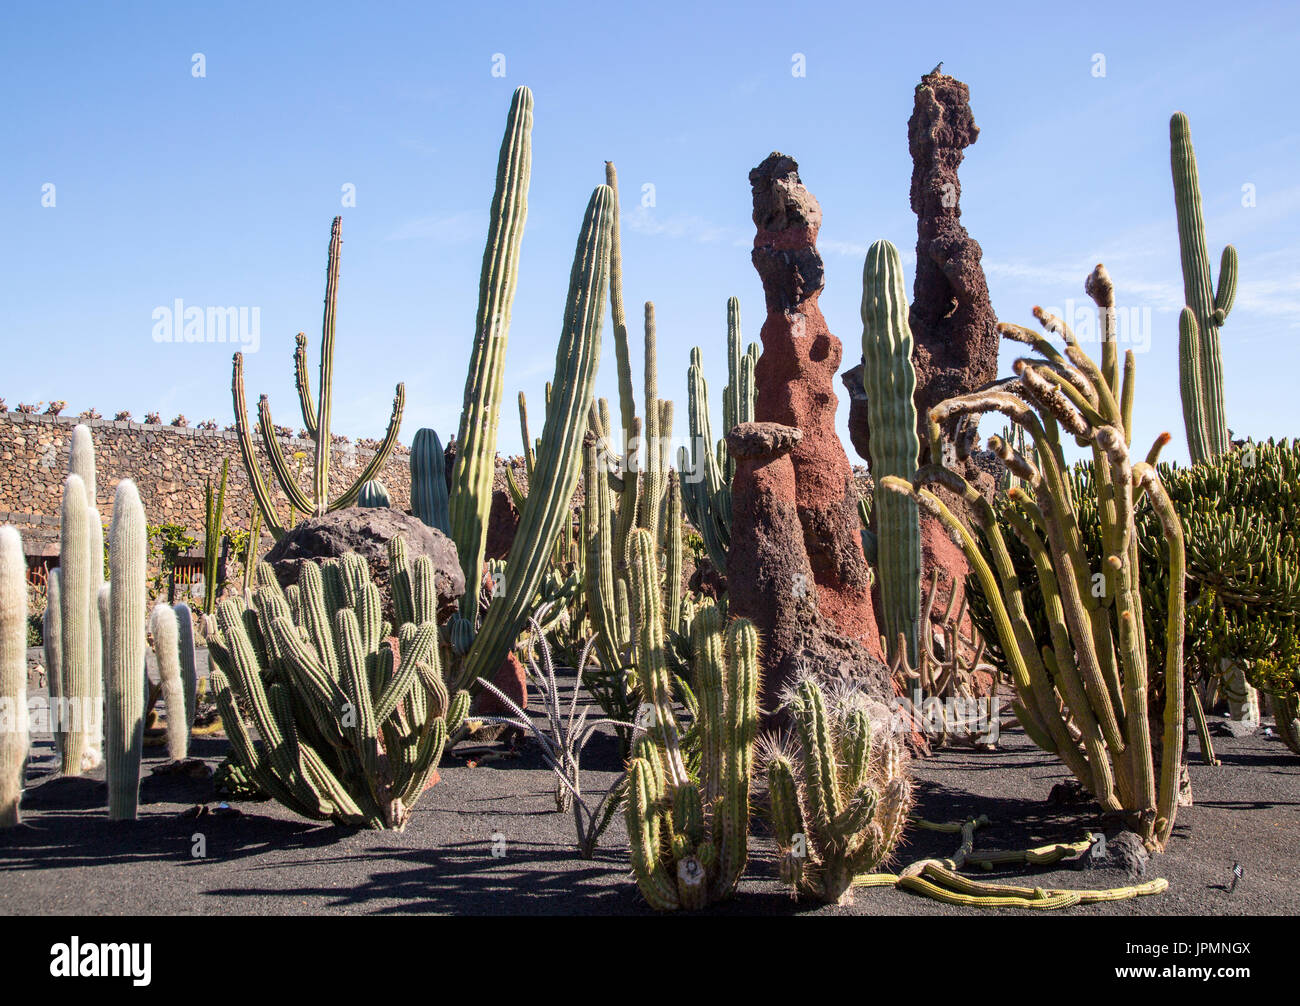 Dentro de las plantas de cactus jardín de cactus diseñado por César Manrique, Guatiza, Lanzarote, Islas Canarias, España Foto de stock